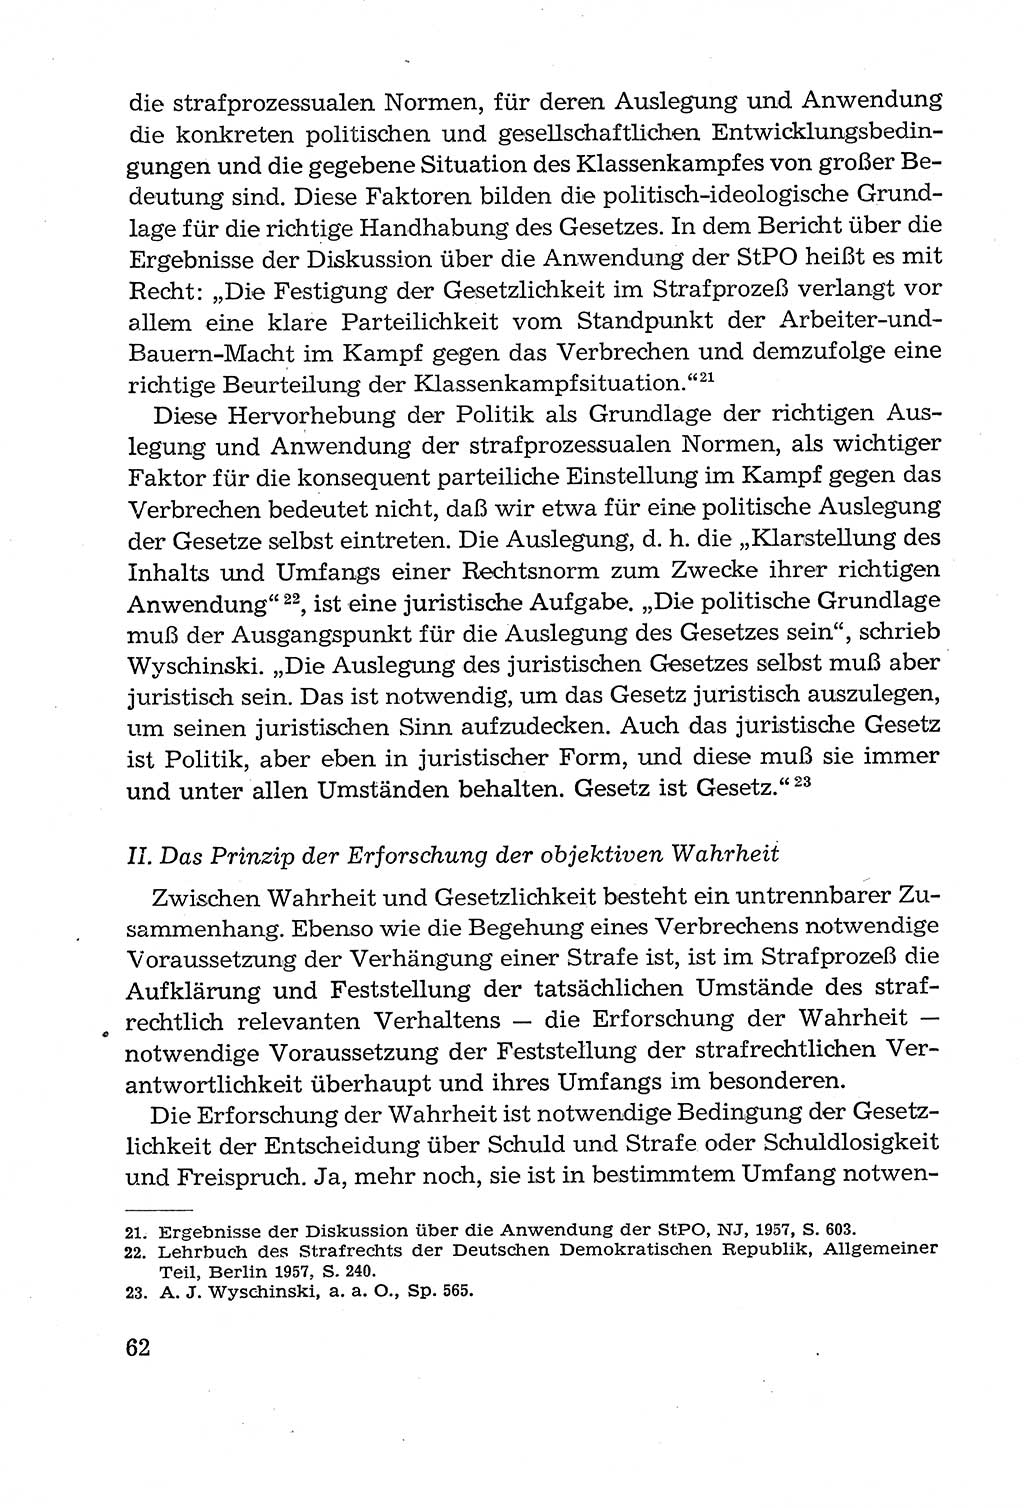 Leitfaden des Strafprozeßrechts der Deutschen Demokratischen Republik (DDR) 1959, Seite 62 (LF StPR DDR 1959, S. 62)